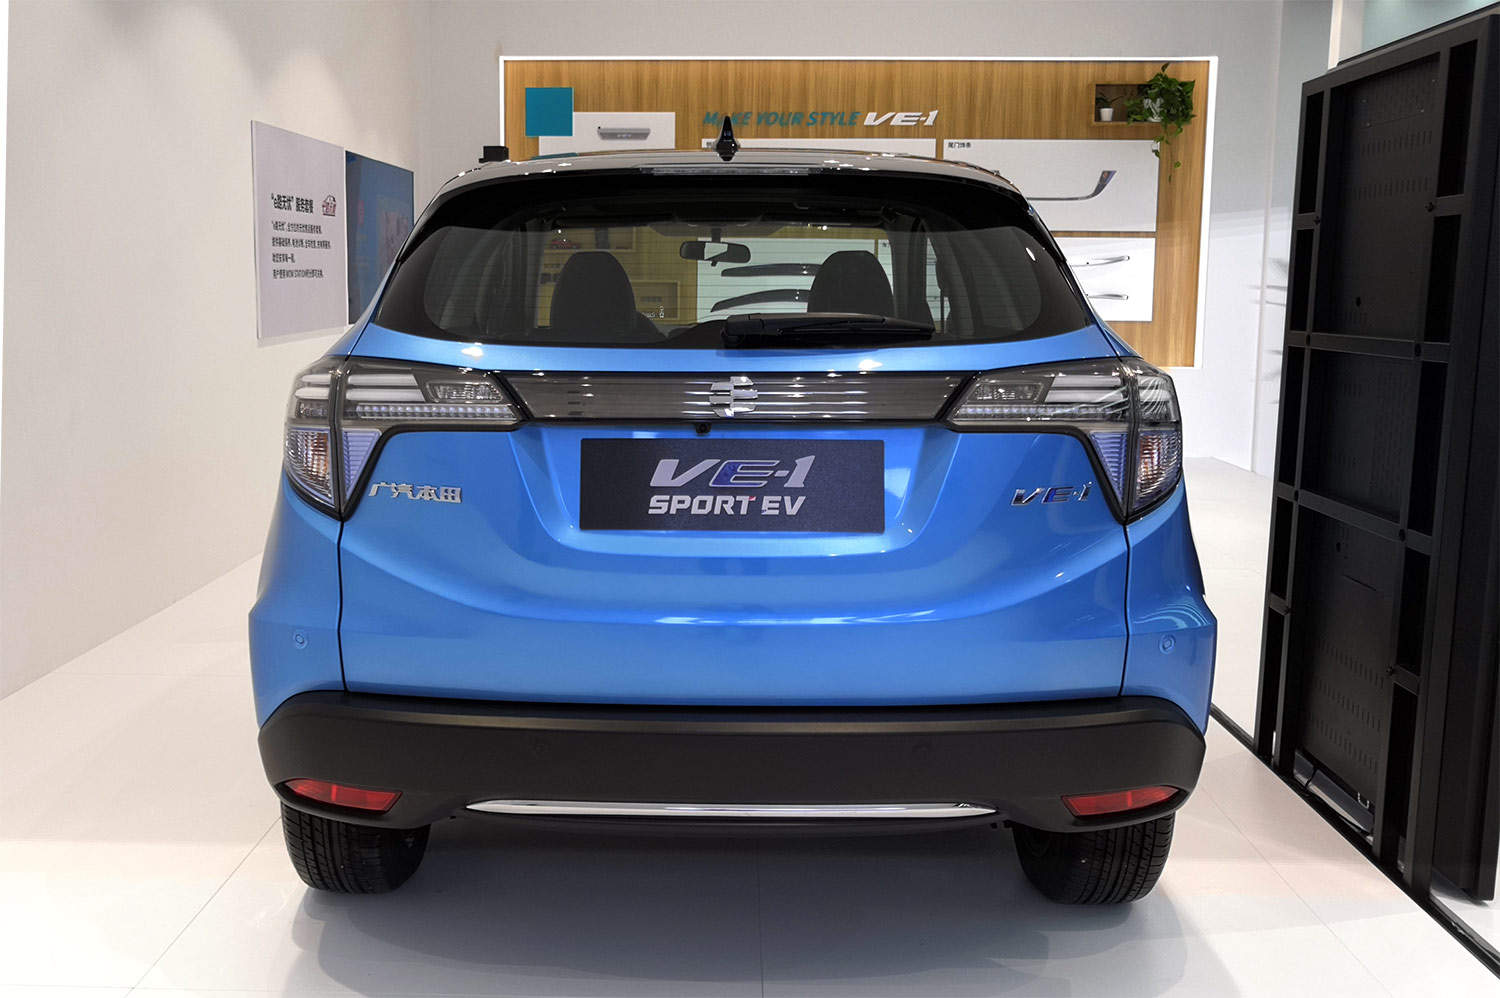 广汽本田VE-1售15.98-17.98 万元 本田在国内第一款电动车上市！